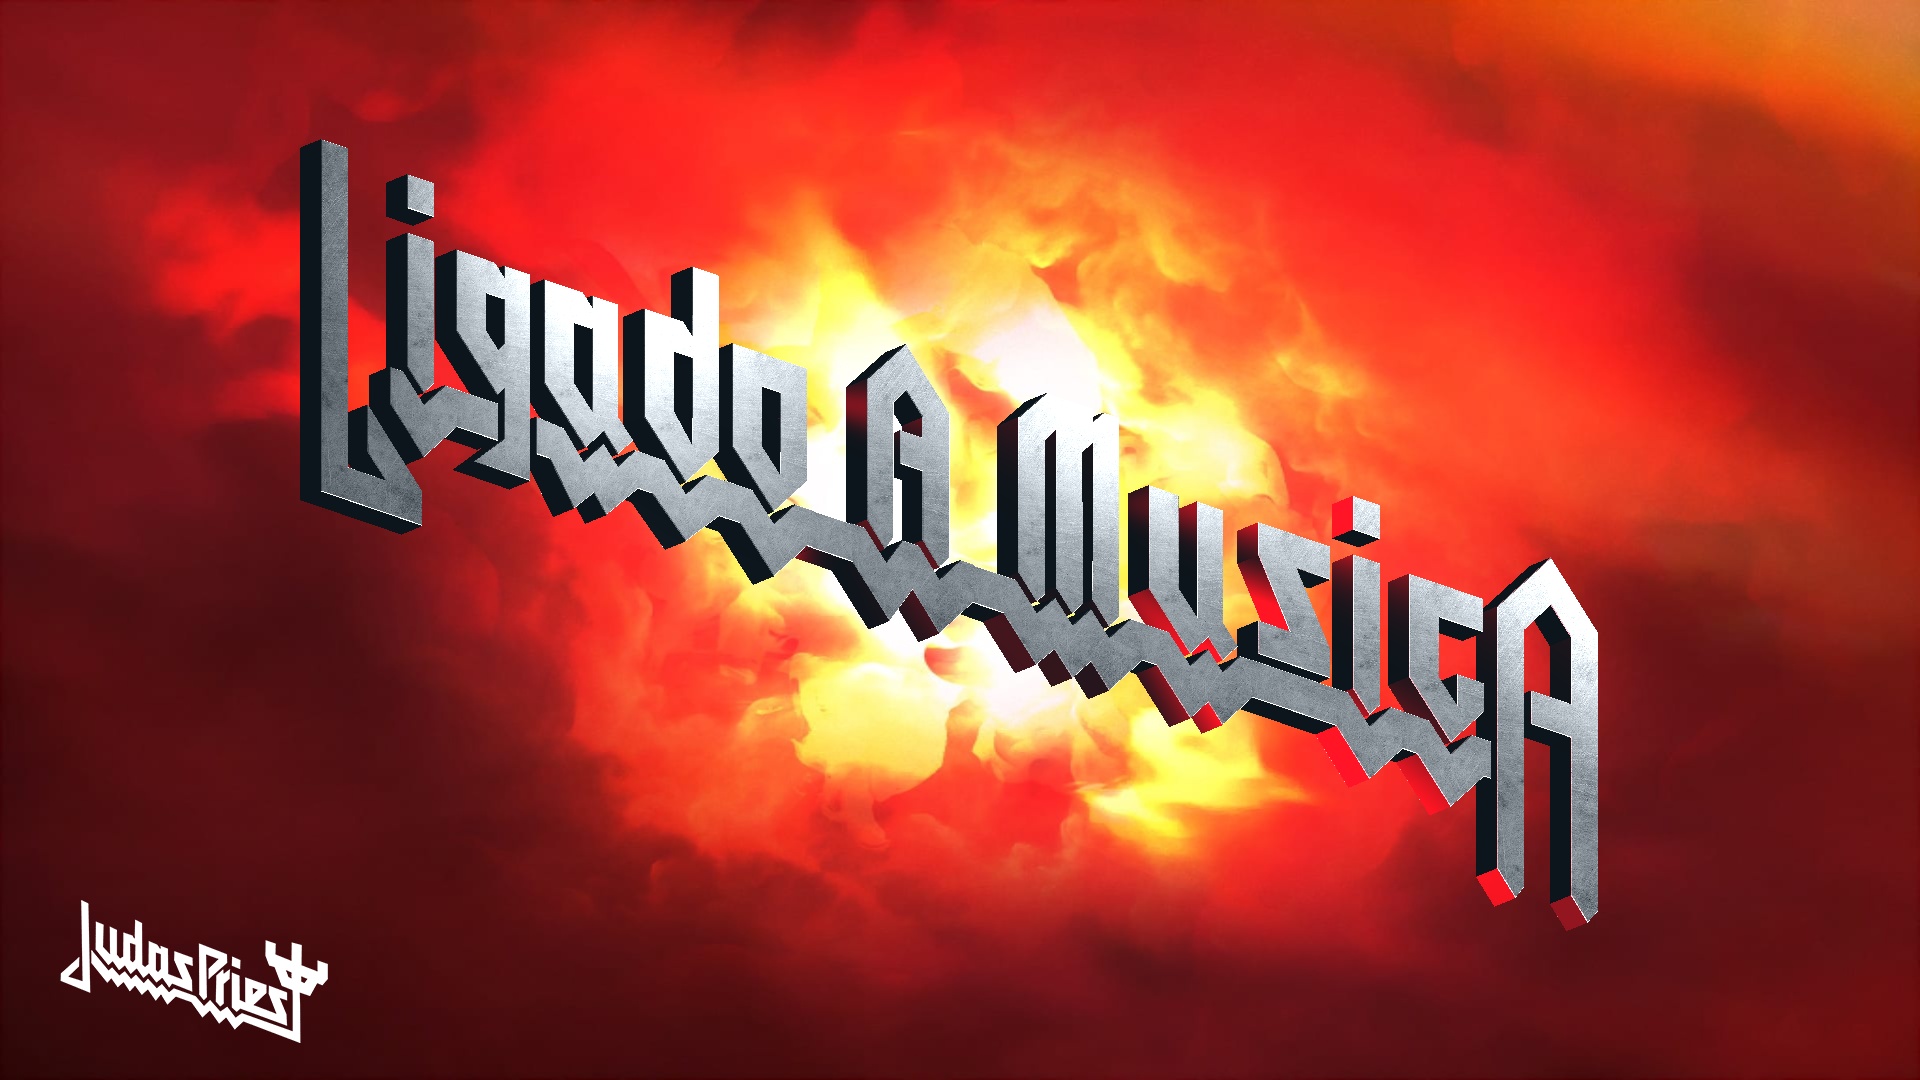 Judas Priest lança gerador de nomes com famoso logotipo